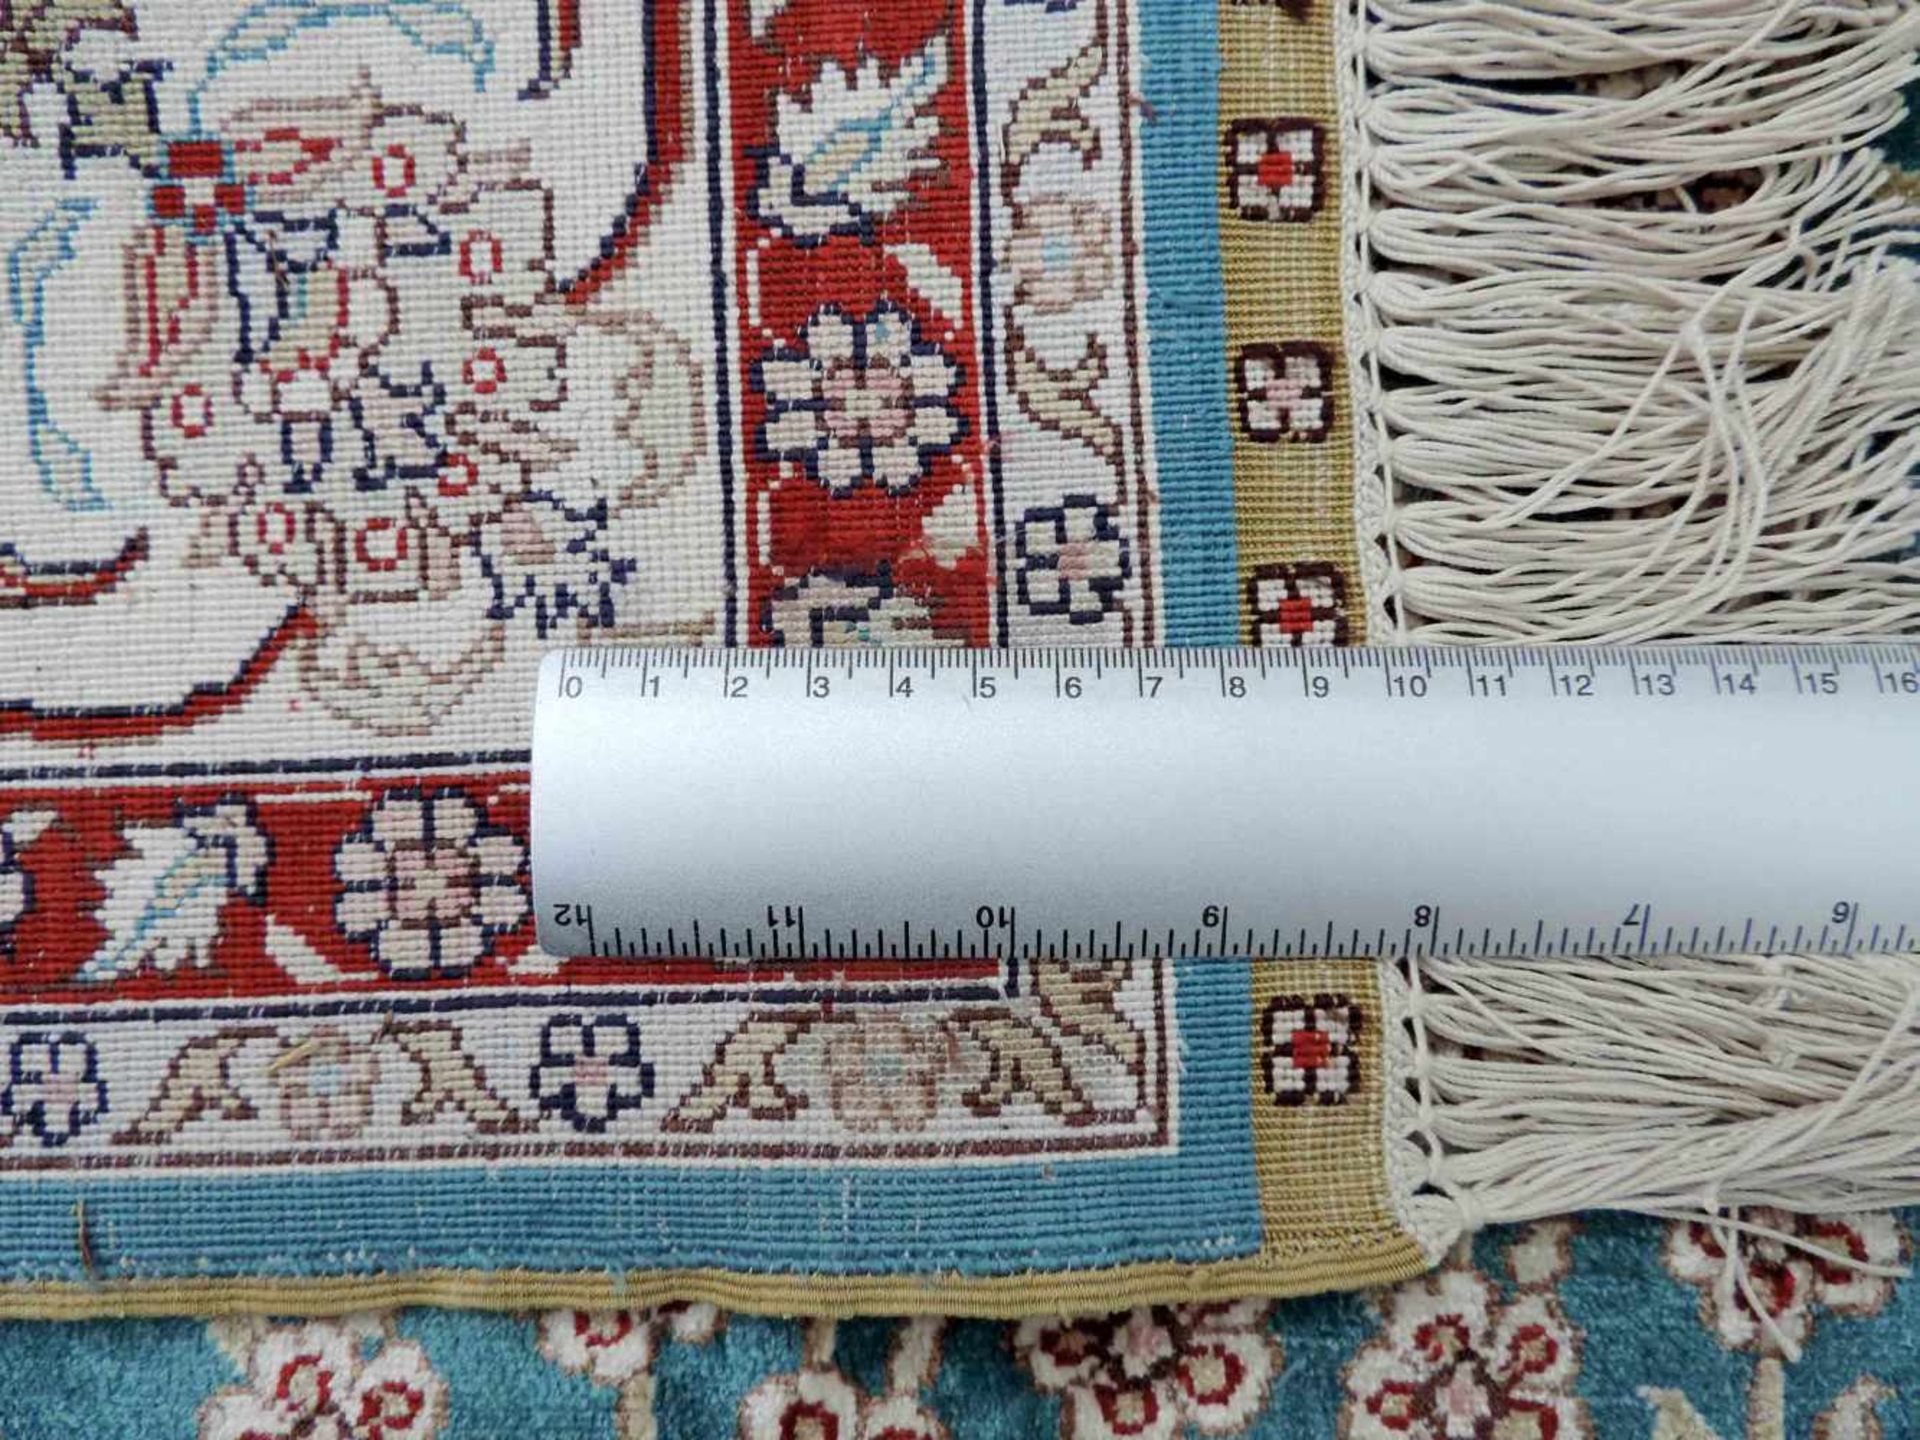 Gebetsteppich, Seide auf Seide. Sehr feine Knüpfung. 183 cm x 124 cm. Handgeknüpft. Kayseri - - Bild 9 aus 9